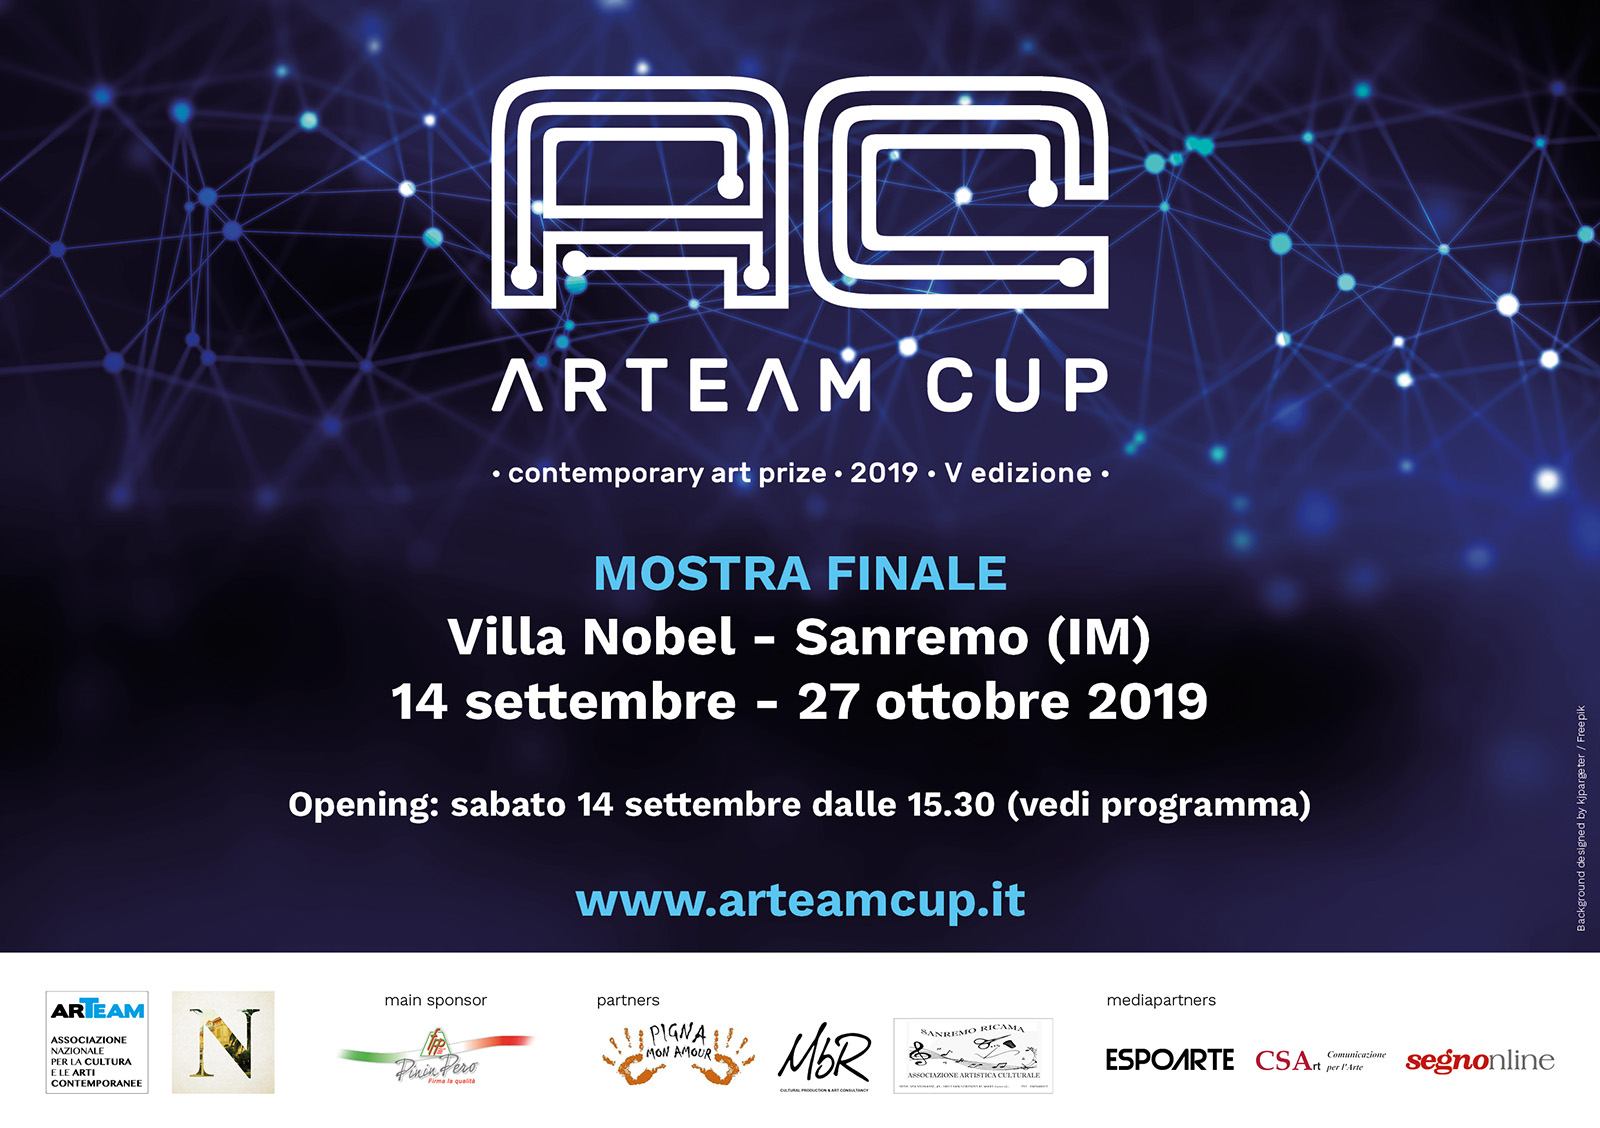 Arteam Cup 2019, la mostra dei finalisti a Villa Nobel, Sanremo